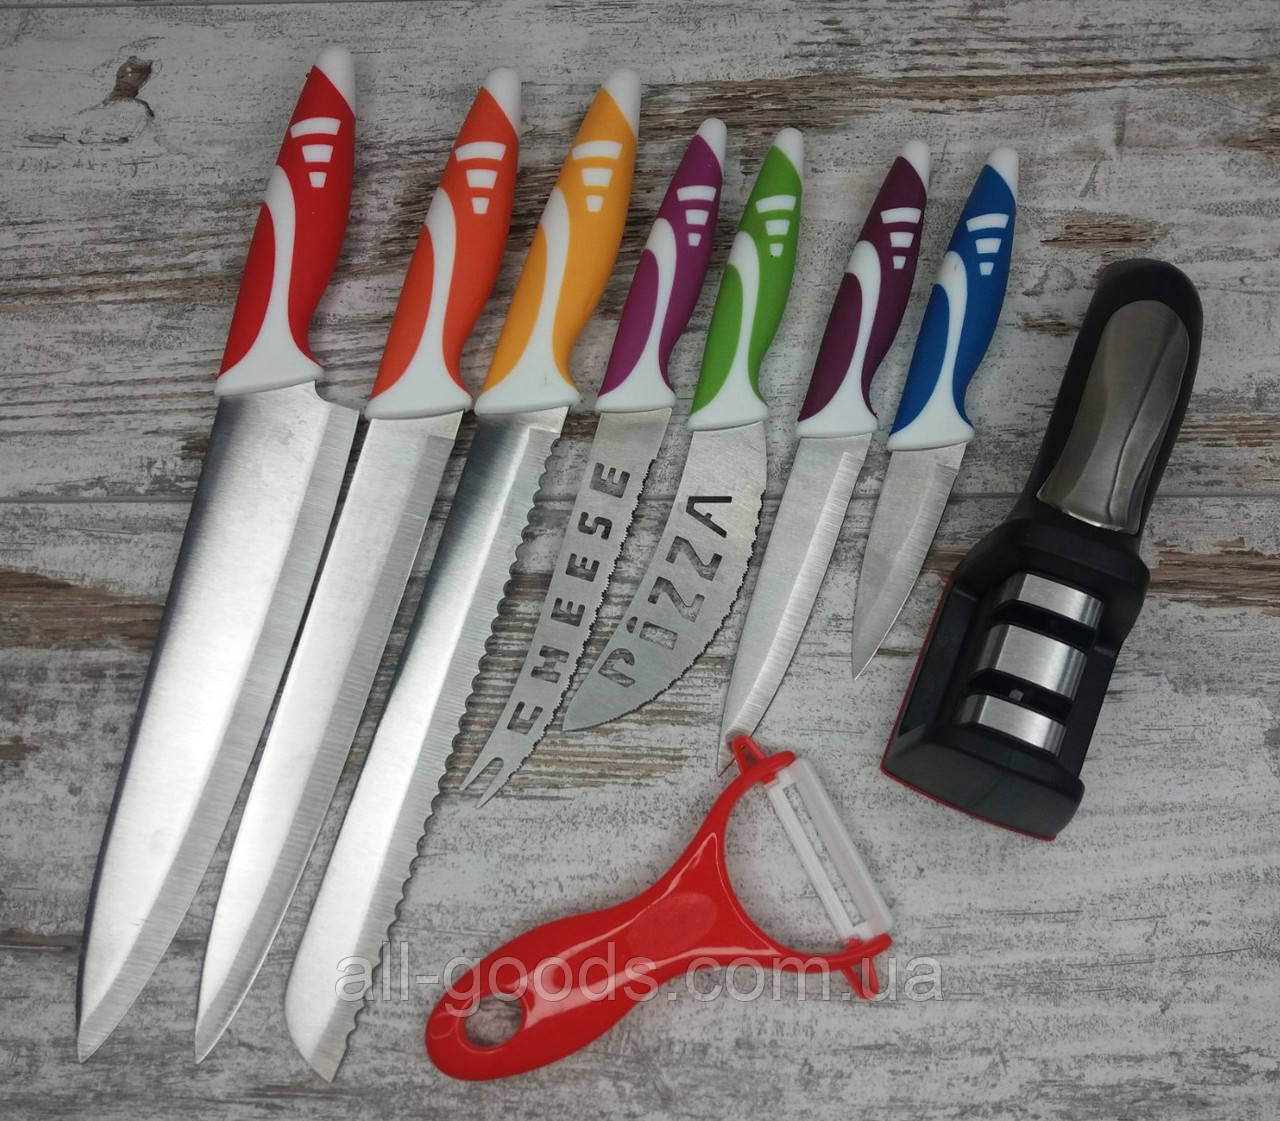 Набор кухонных ножей из 8 предметов в комплекте с ручной точилкой для ножей Household Knife Sharpener All